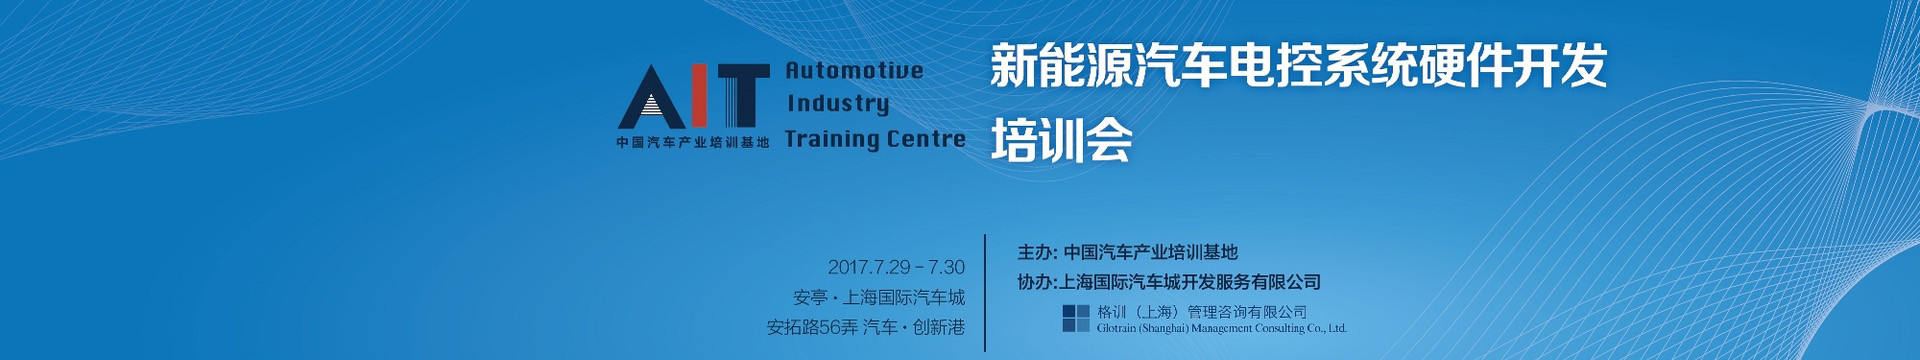 新能源汽车电控系统硬件开发培训会